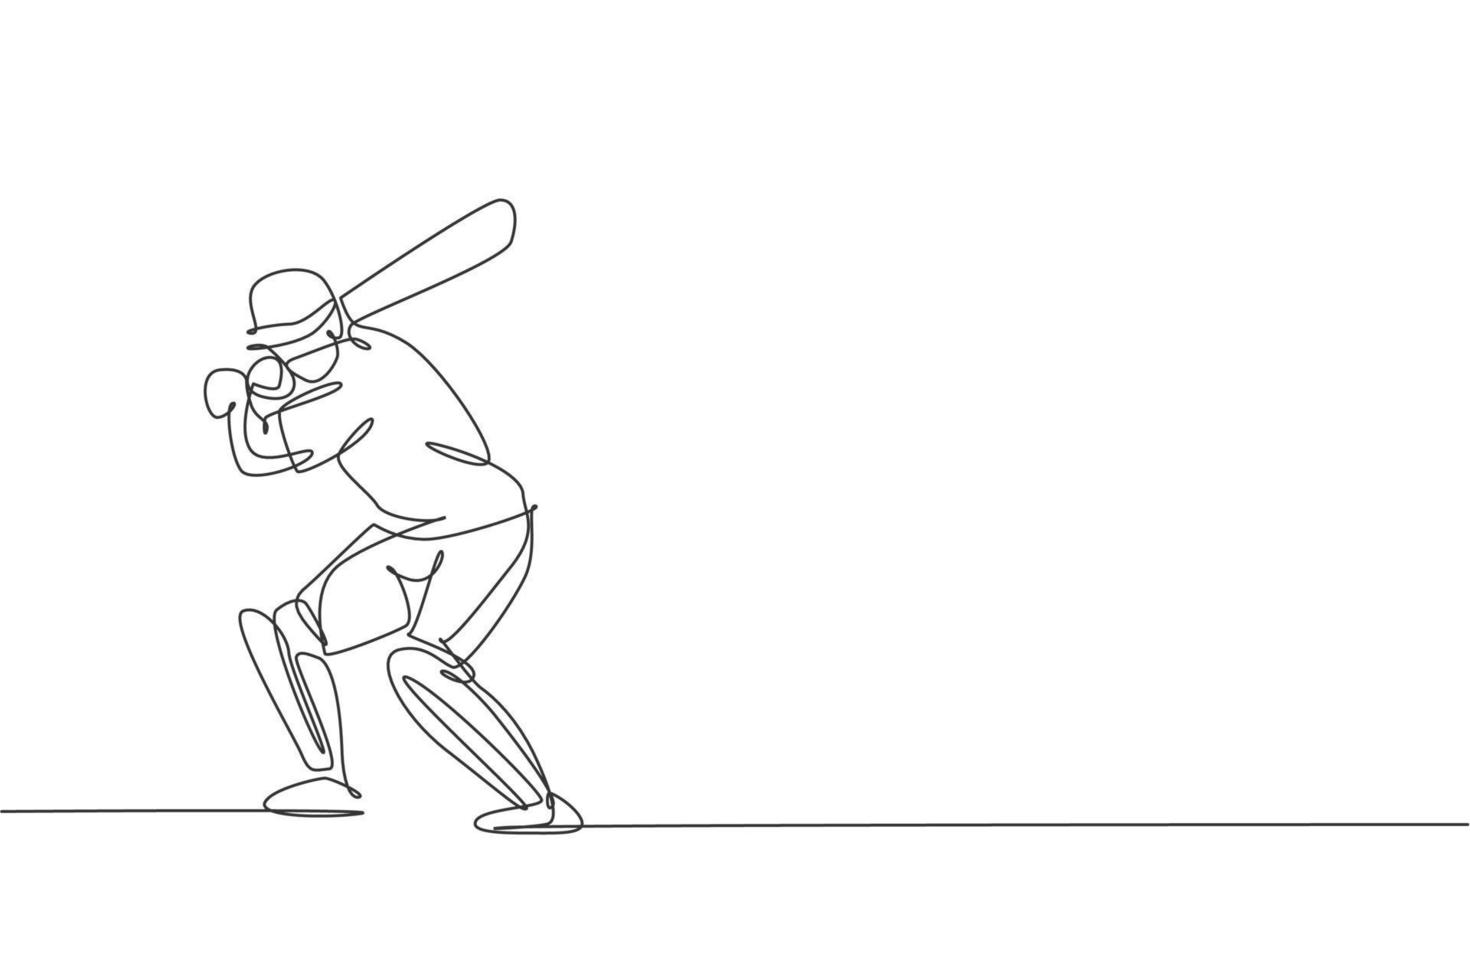 een enkele lijntekening van jonge energieke man cricket speler houding staande om hit bal vectorillustratie te oefenen. sportconcept. modern ononderbroken lijntekeningontwerp voor cricketwedstrijdbanner vector